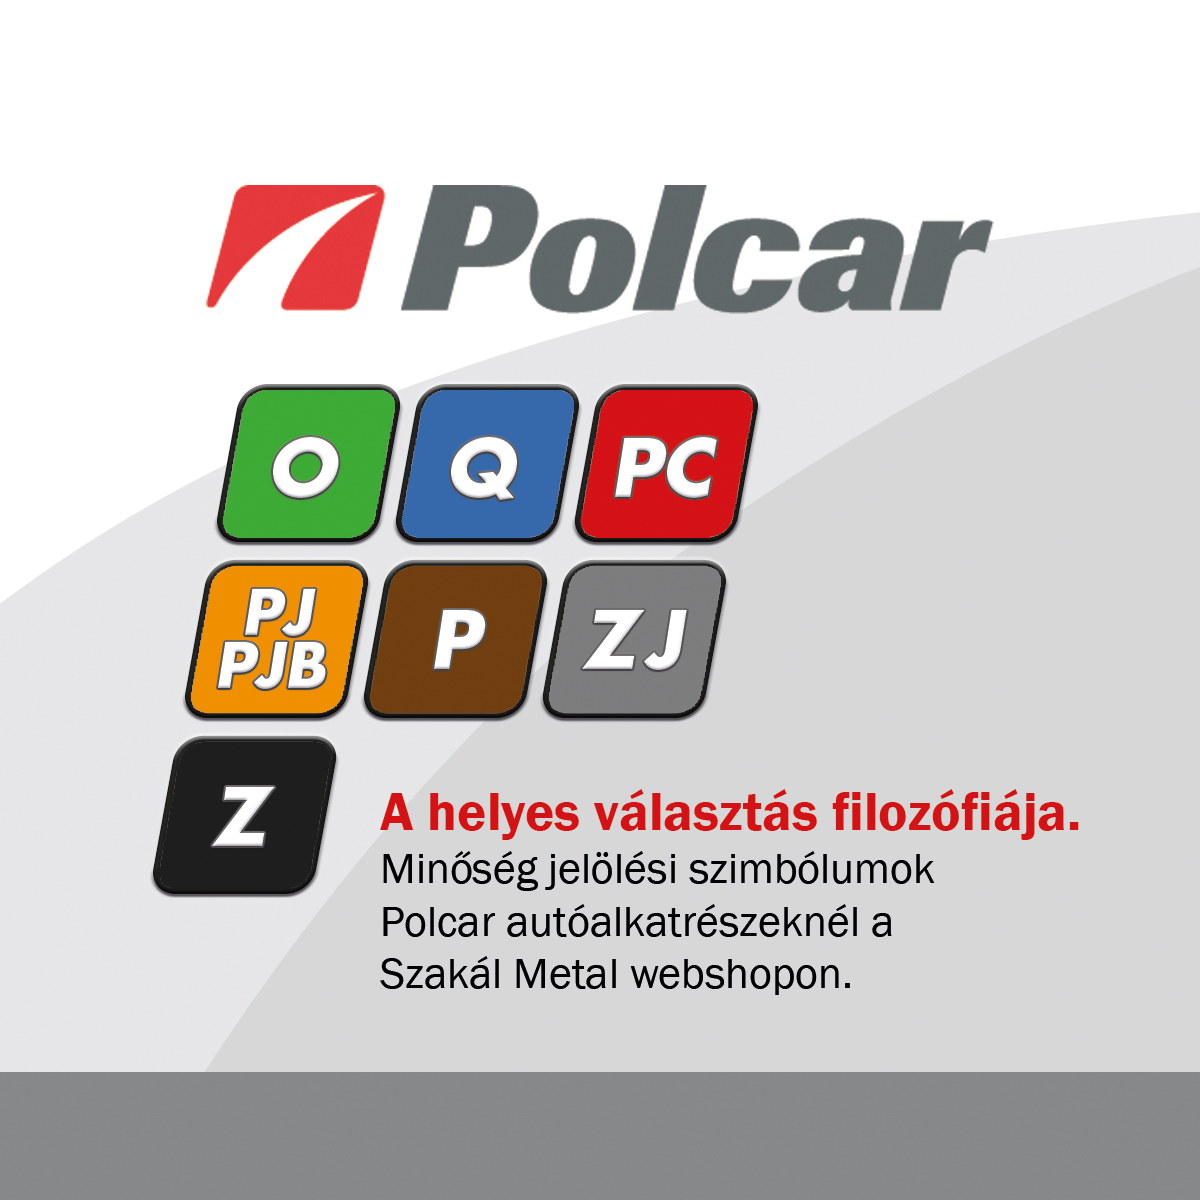 Polcar minőségi jelölések SZM webshopban